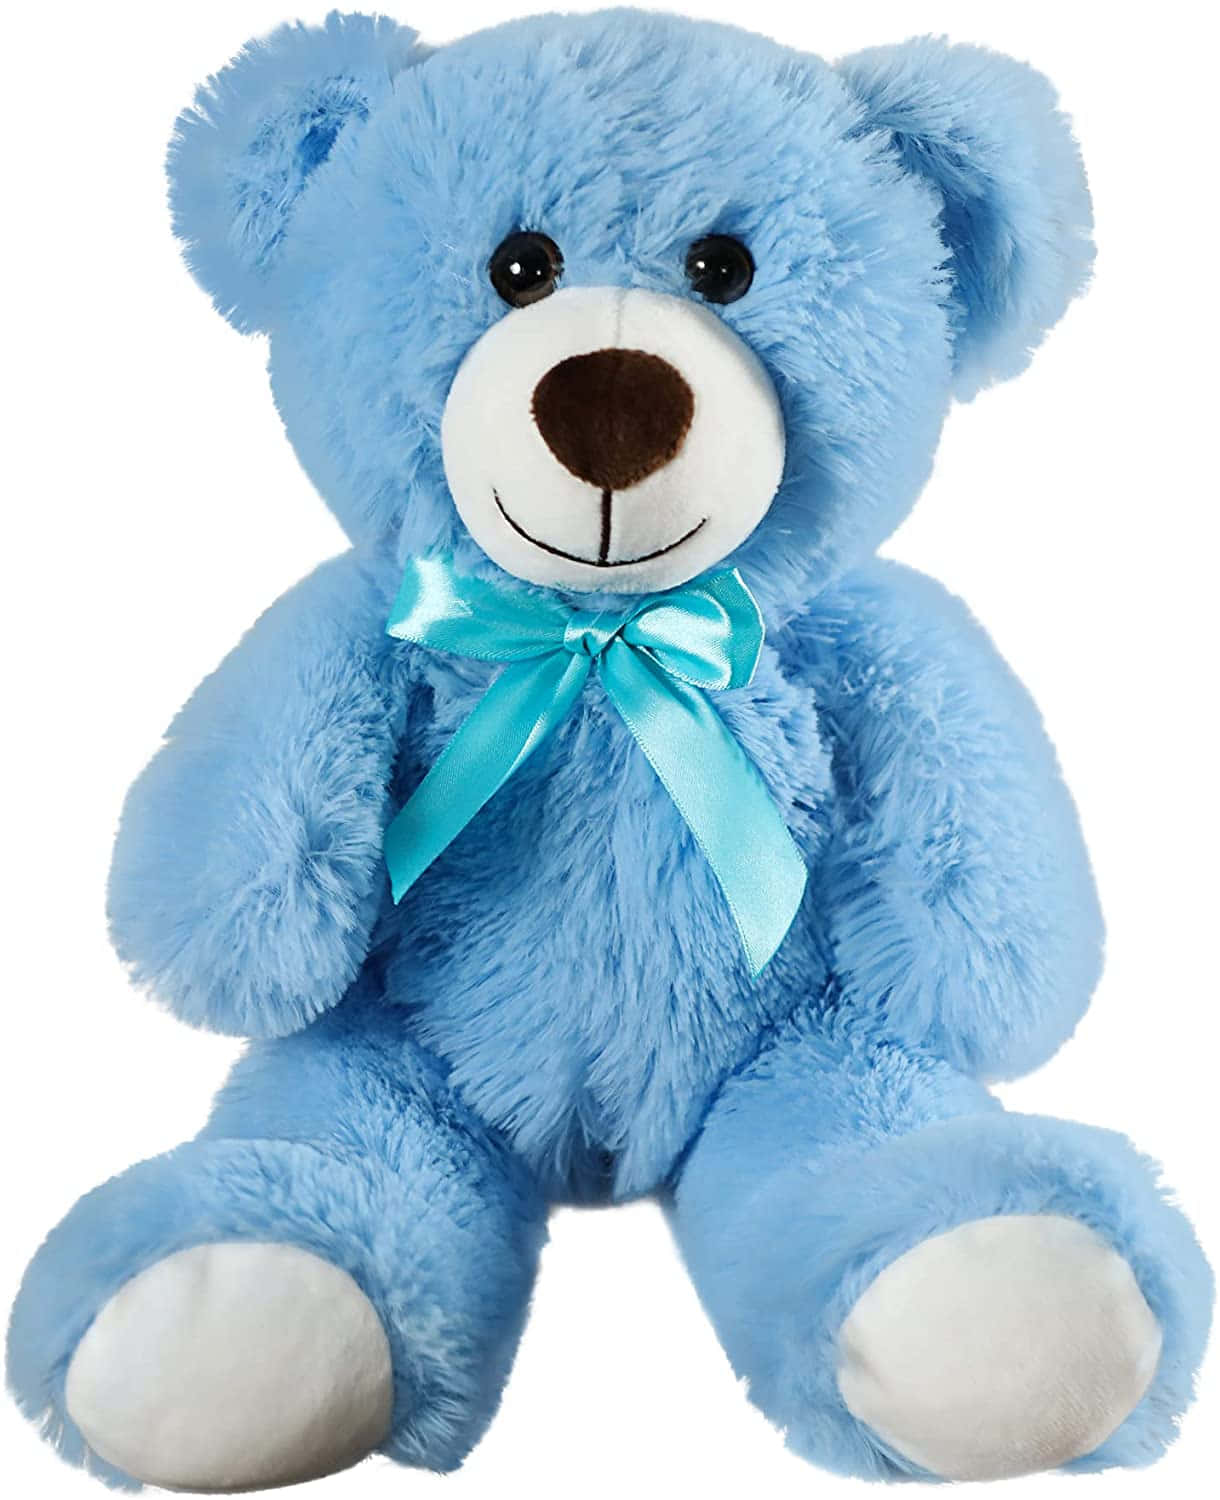 A Blue Teddy Bear With A Blue Bow